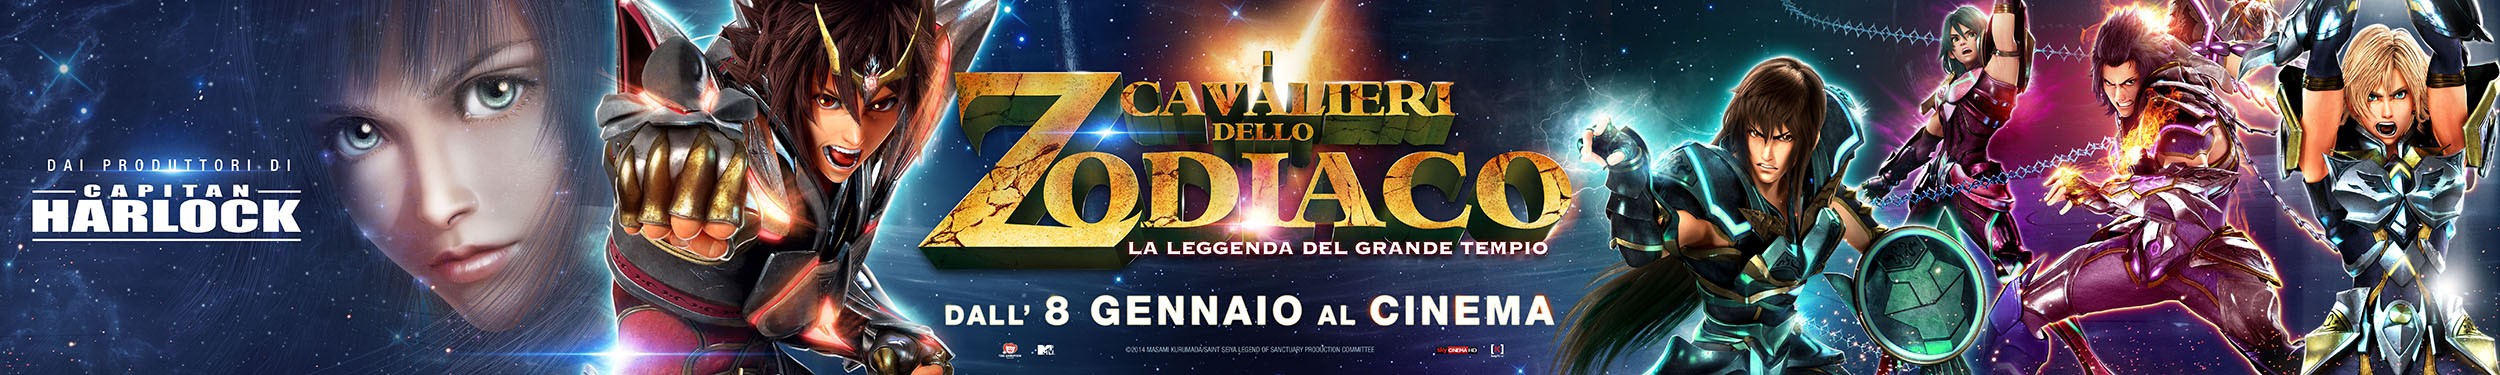 Extra Large Movie Poster Image for I Cavalieri dello Zodiaco - La leggenda del Grande Tempio (#8 of 9)